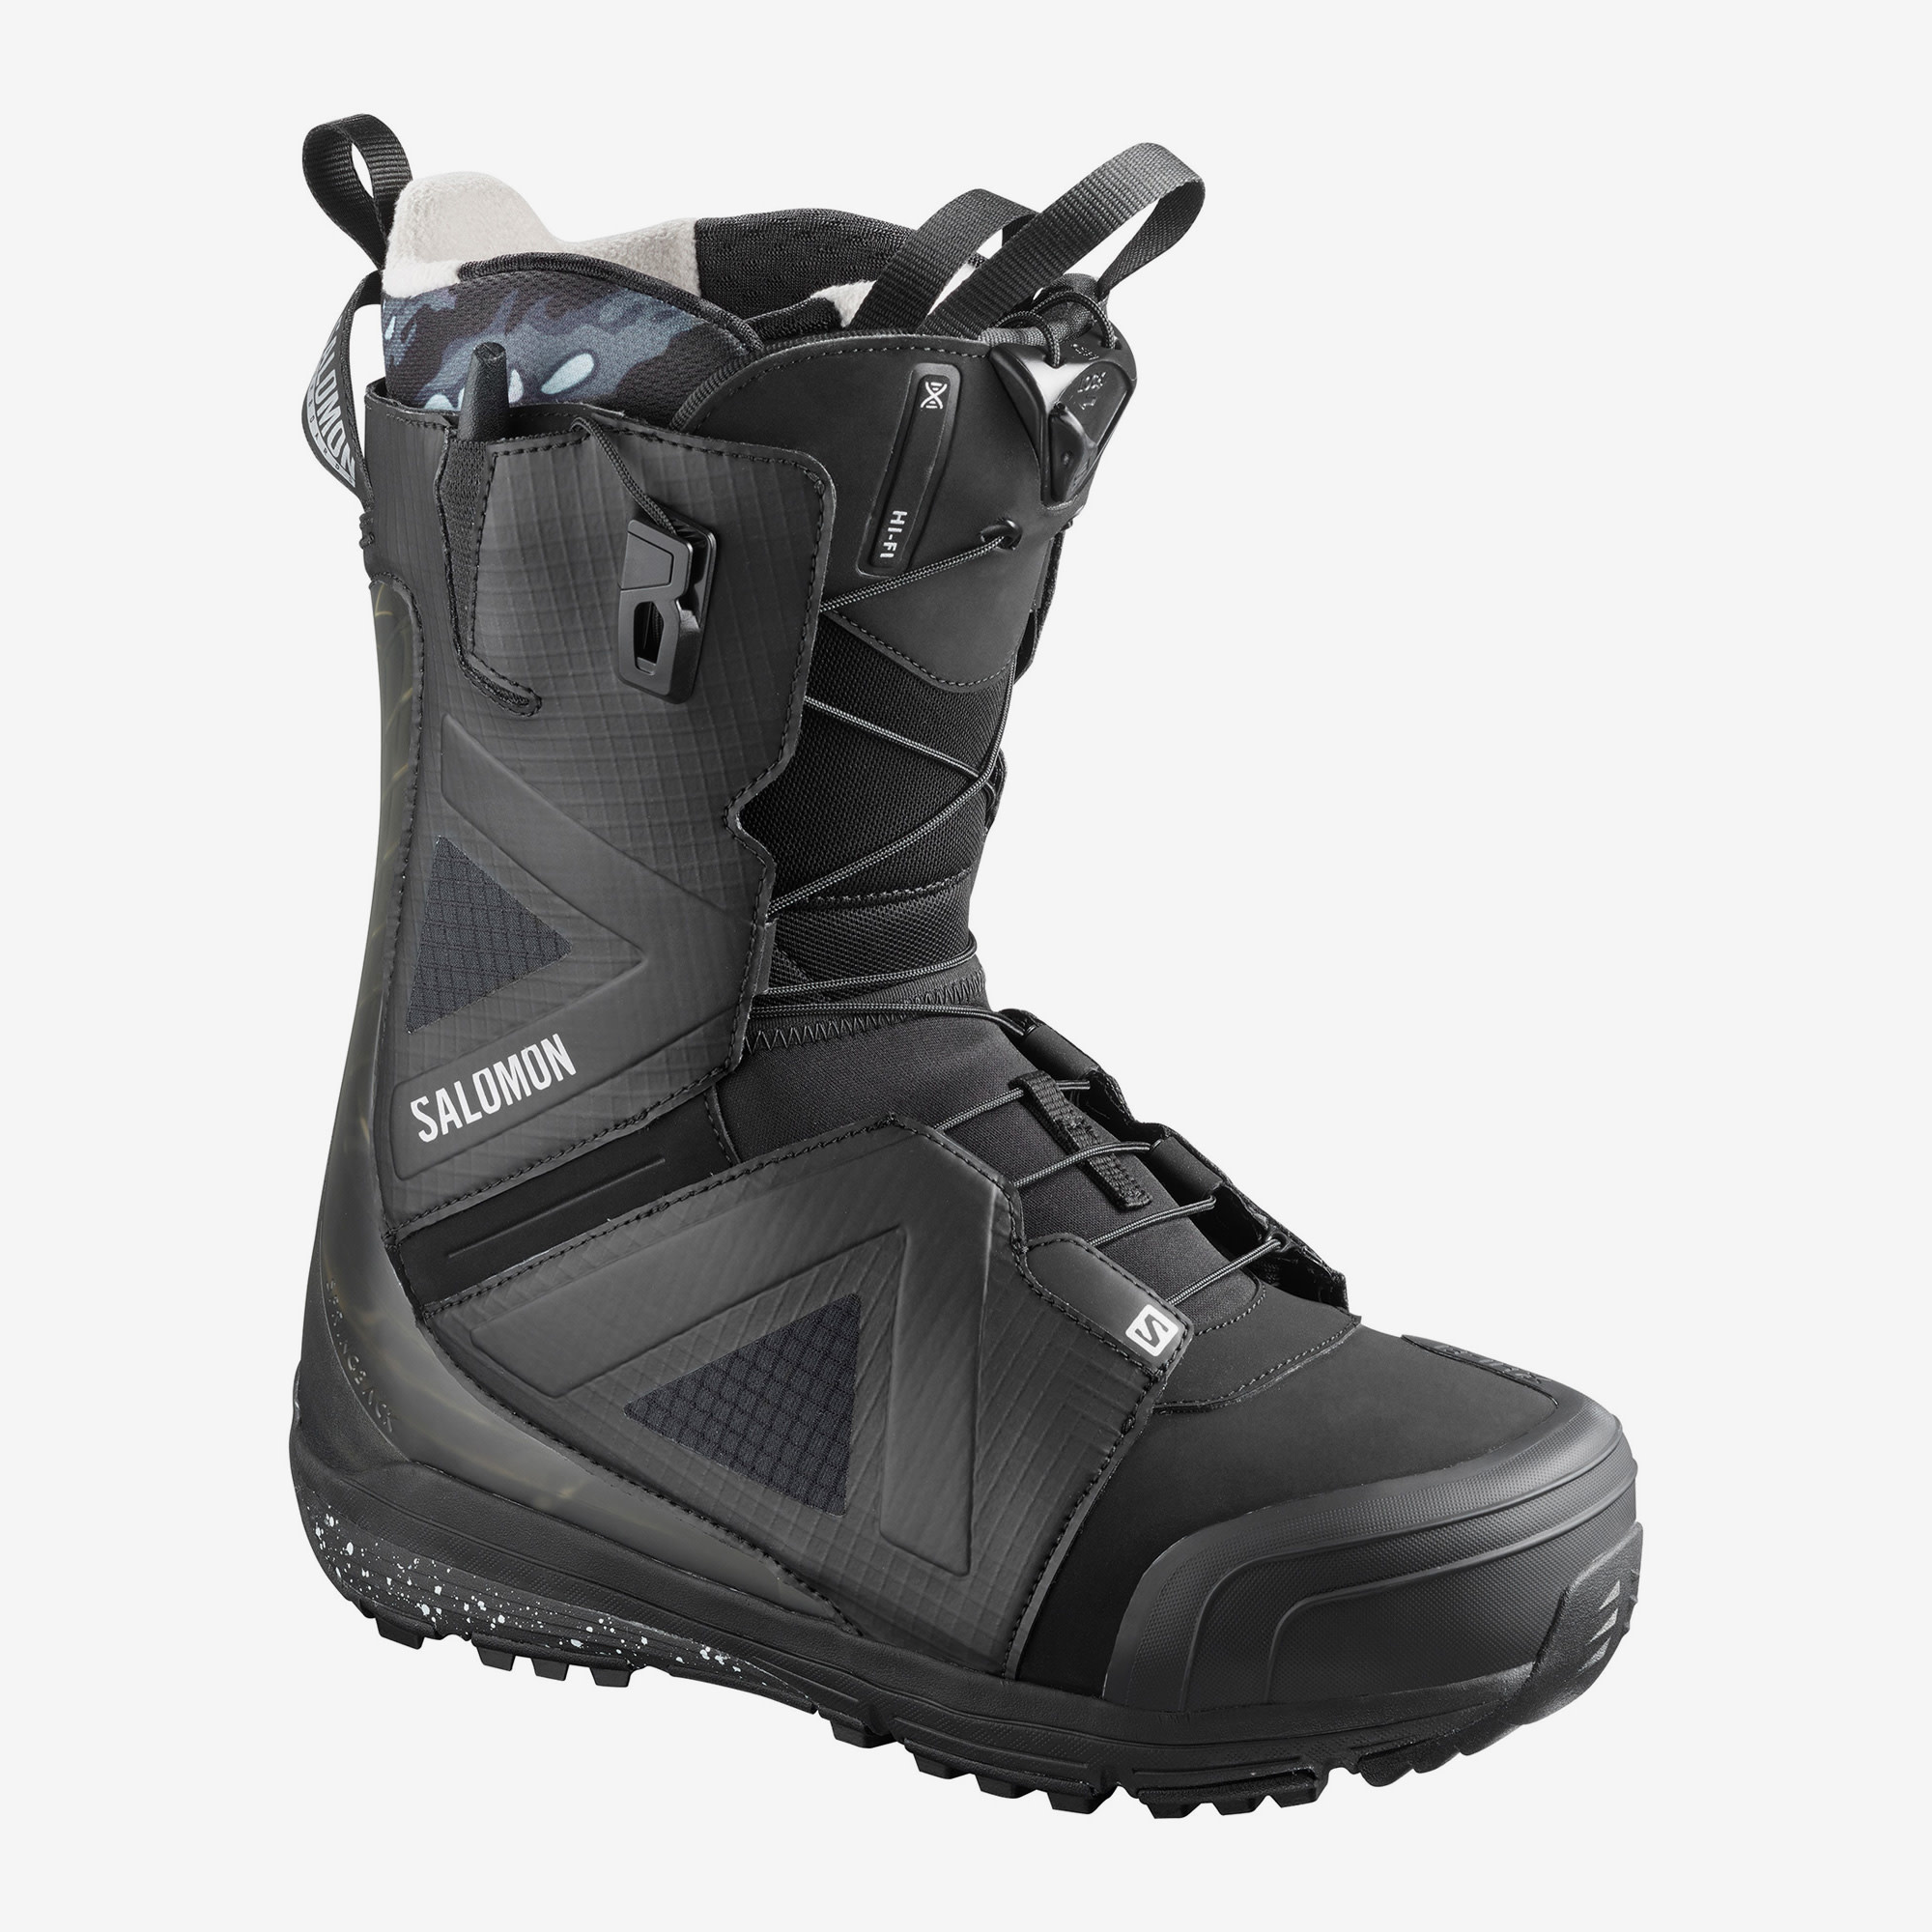 Salomon Hi Fi Snowboard Boots - The BackCountry